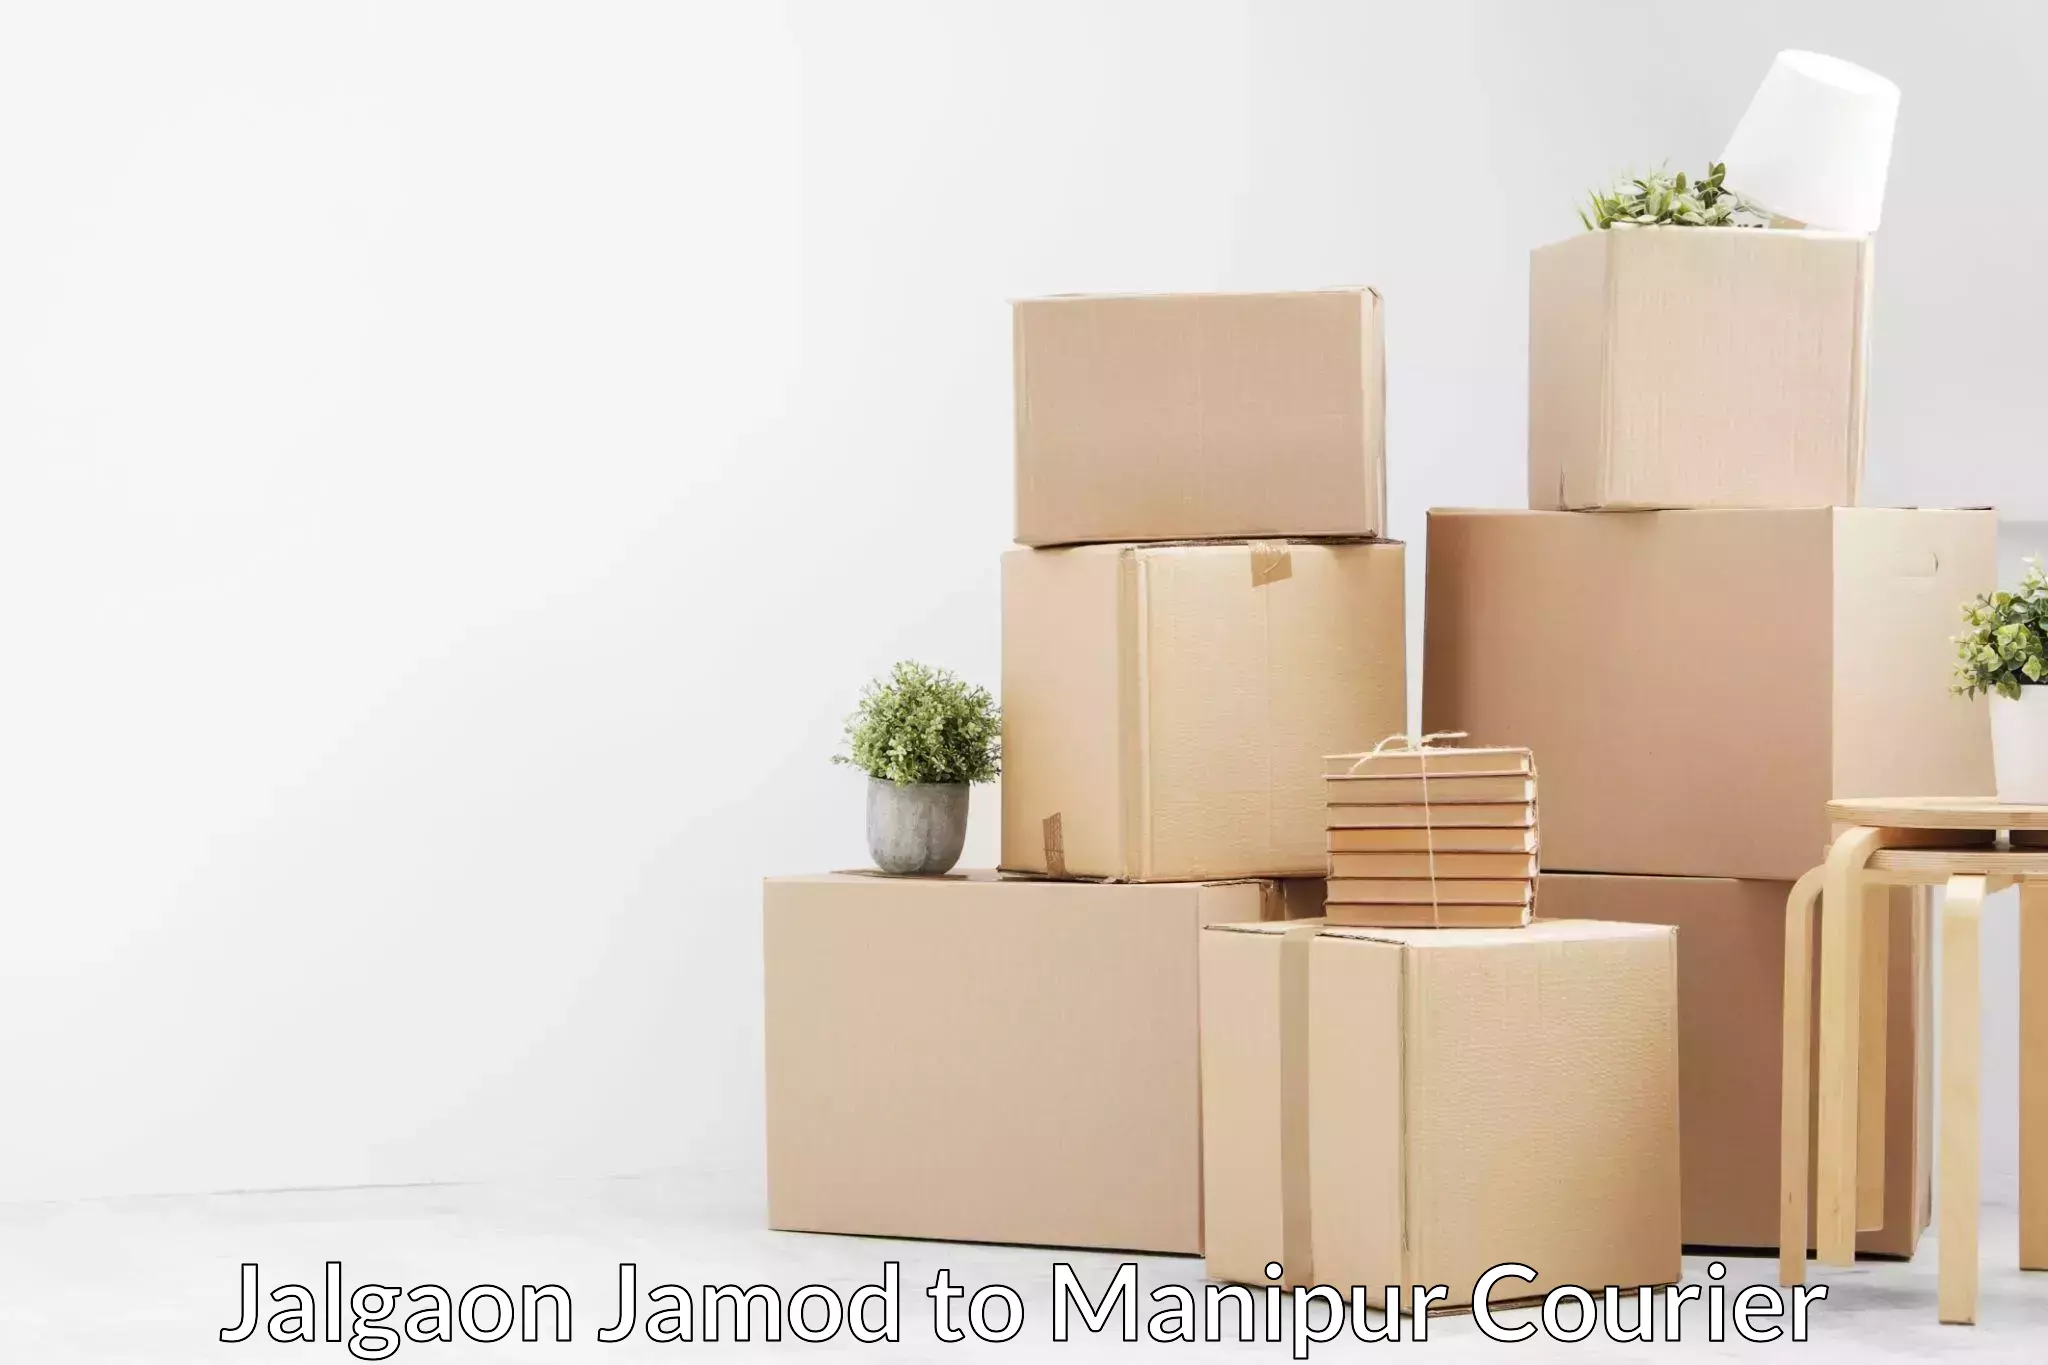 Household moving experts Jalgaon Jamod to Kakching